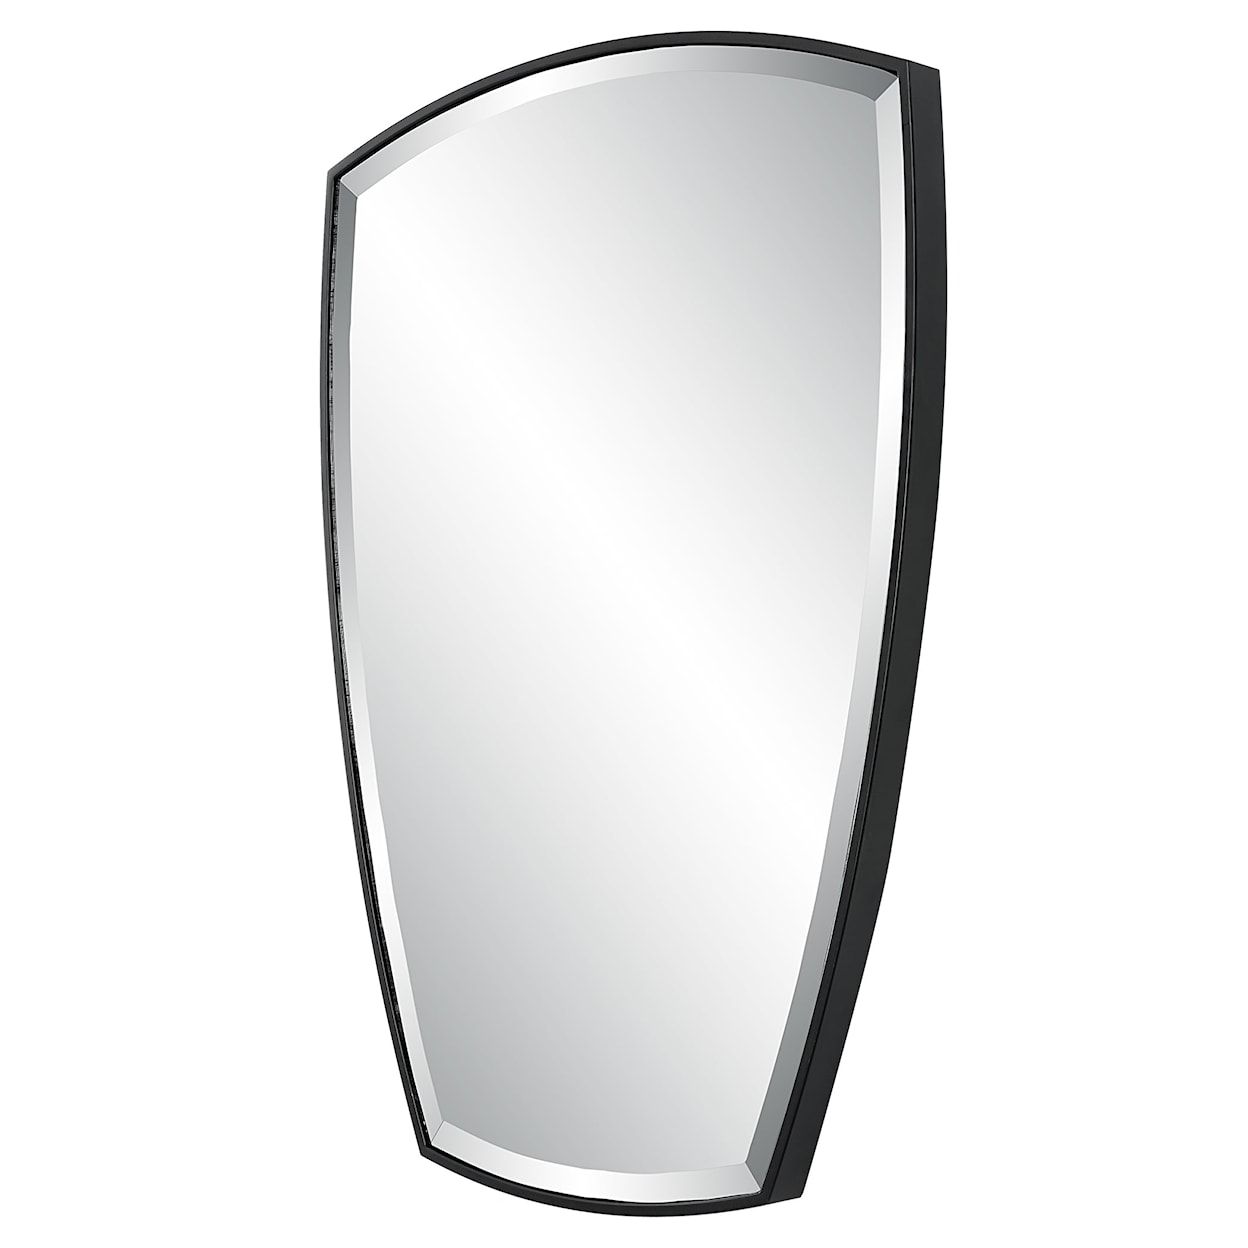 Uttermost Crest Curved Iron Mirror with Black Mirror Trim